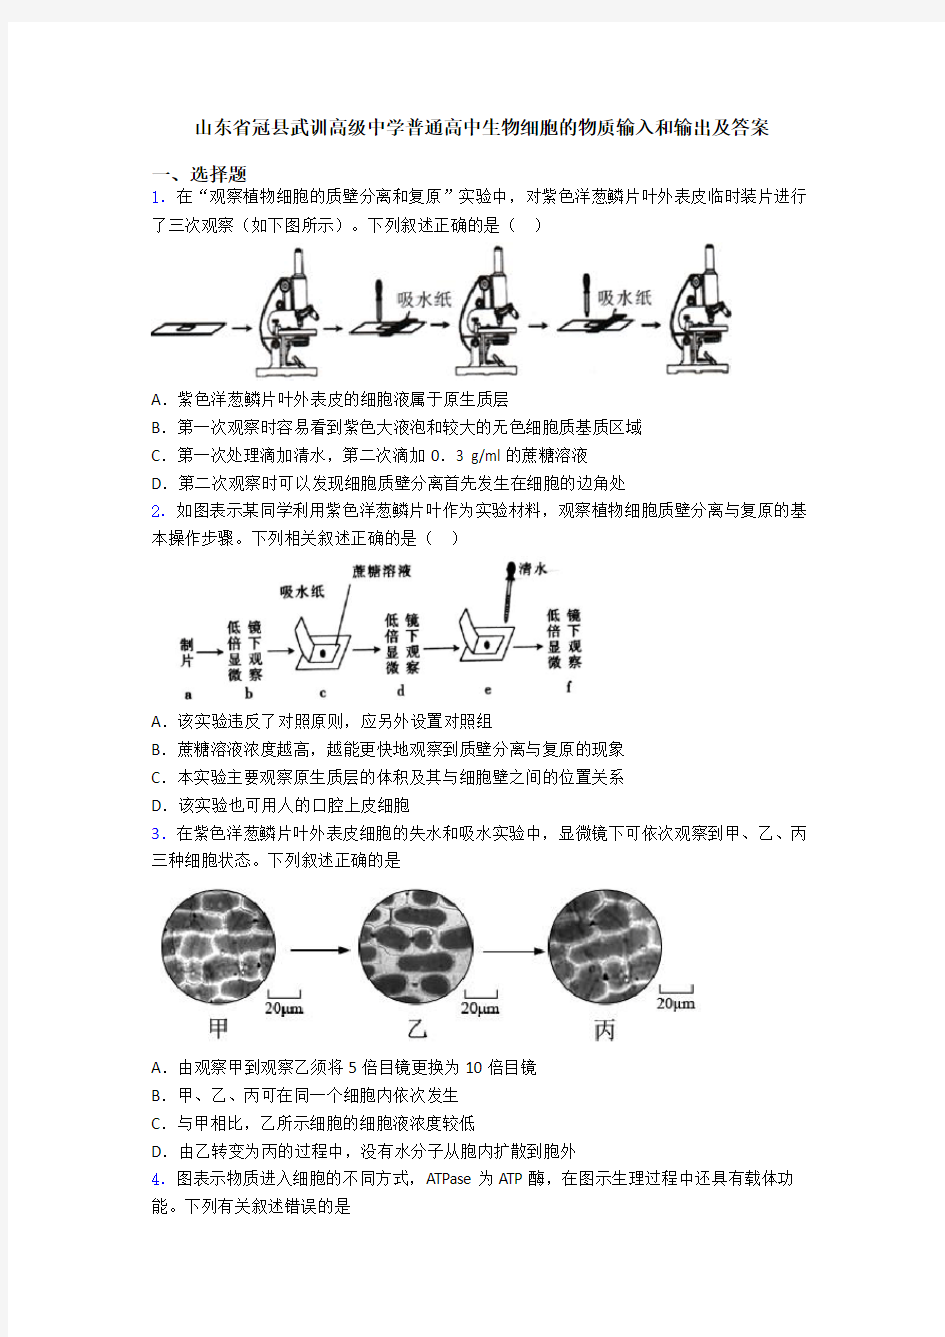 山东省冠县武训高级中学普通高中生物细胞的物质输入和输出及答案